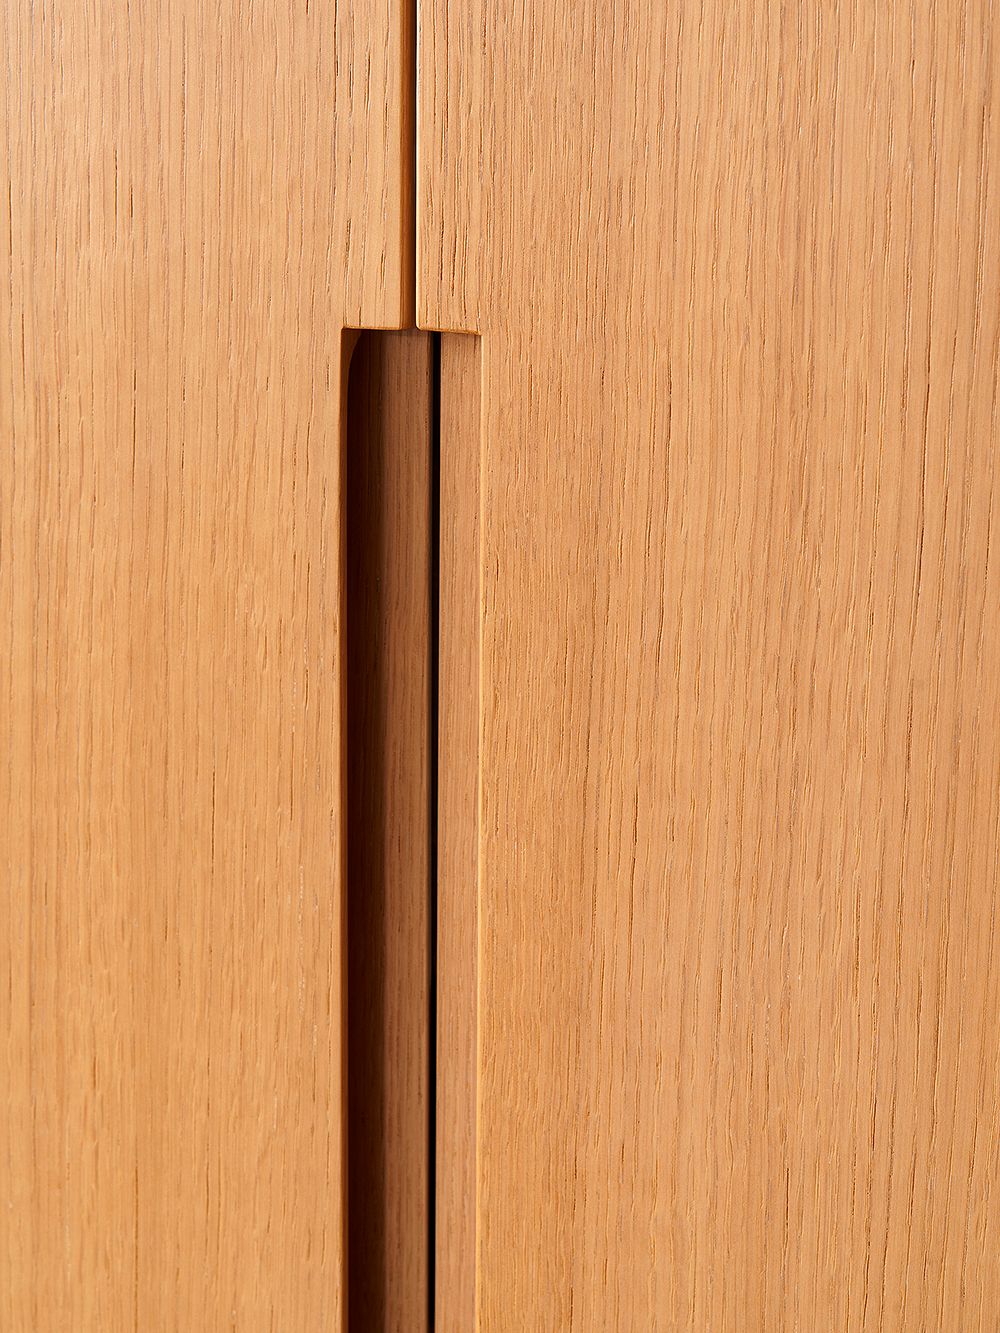 A detail of a cupboard door